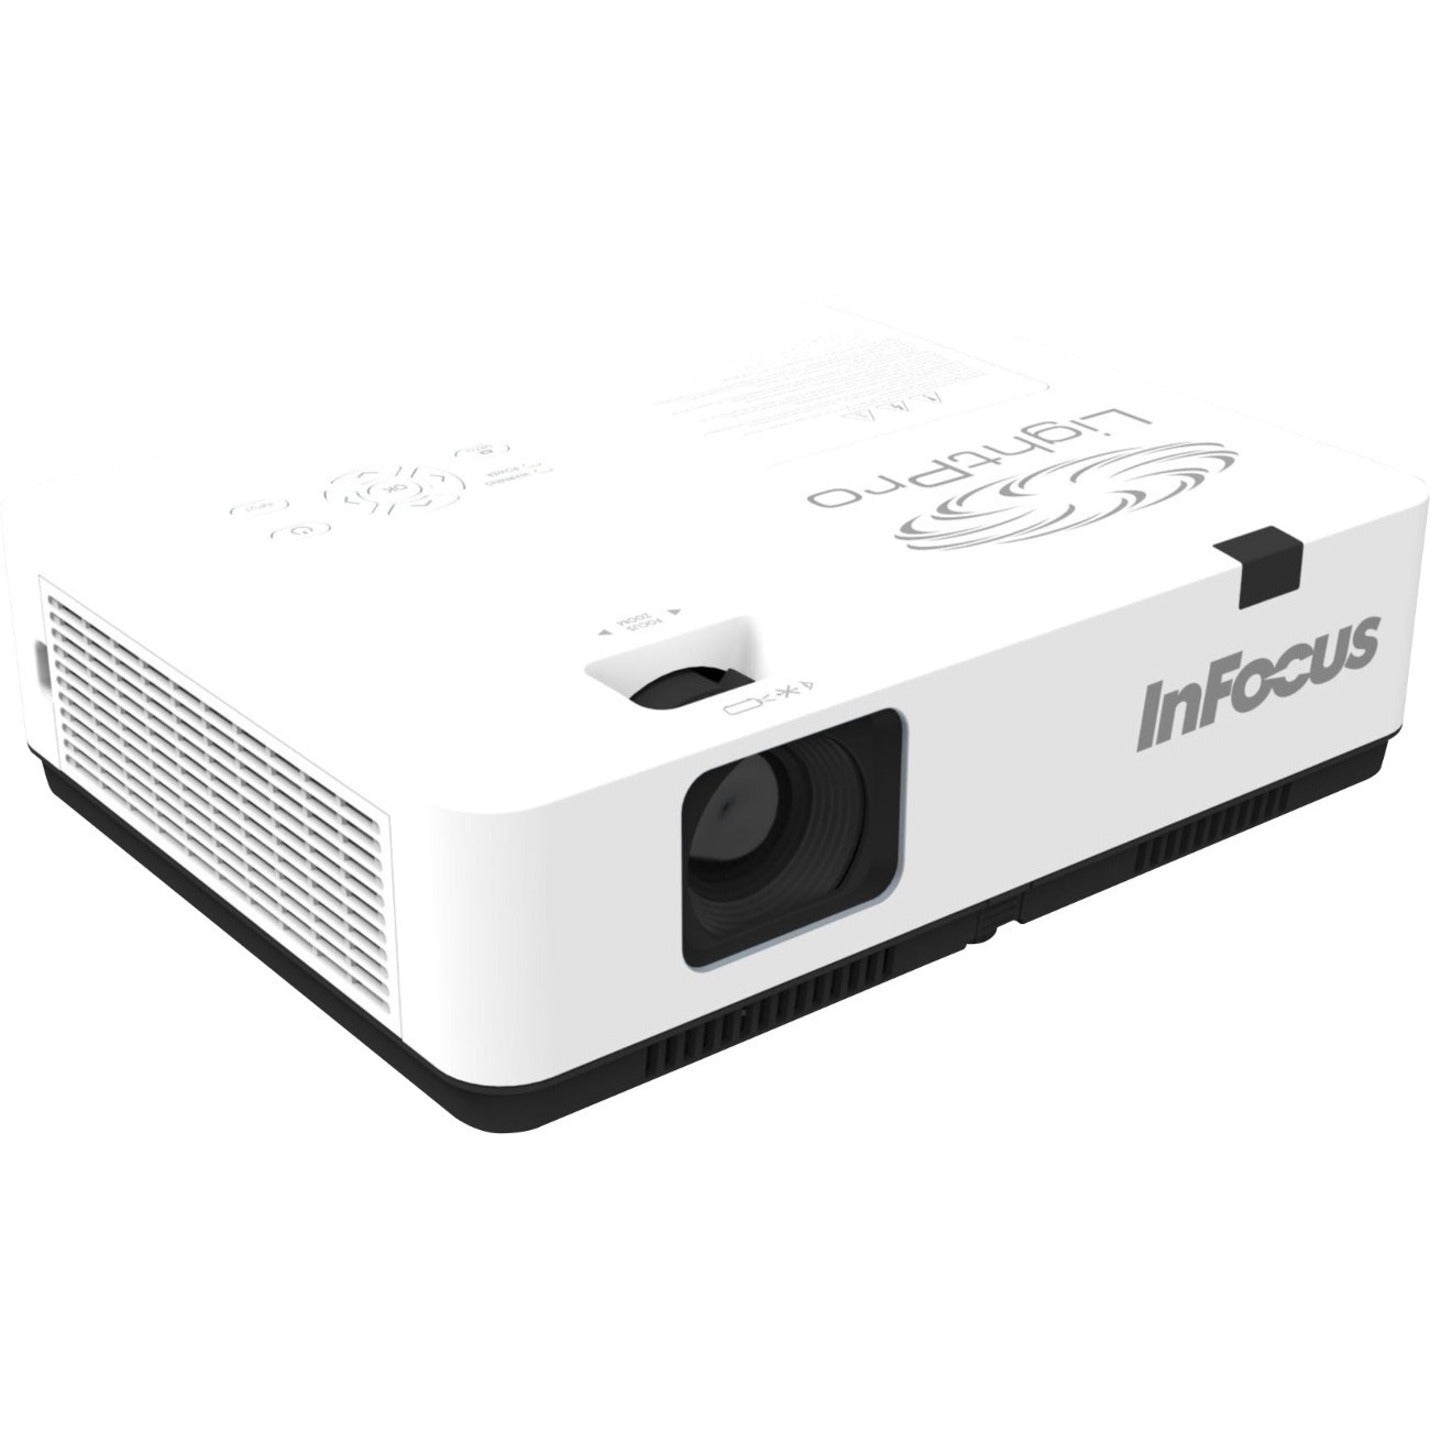 InFocus Advanced 3LCD Projector - XGA, 4000 lm, 4:3 Aspect Ratio [Discontinued]